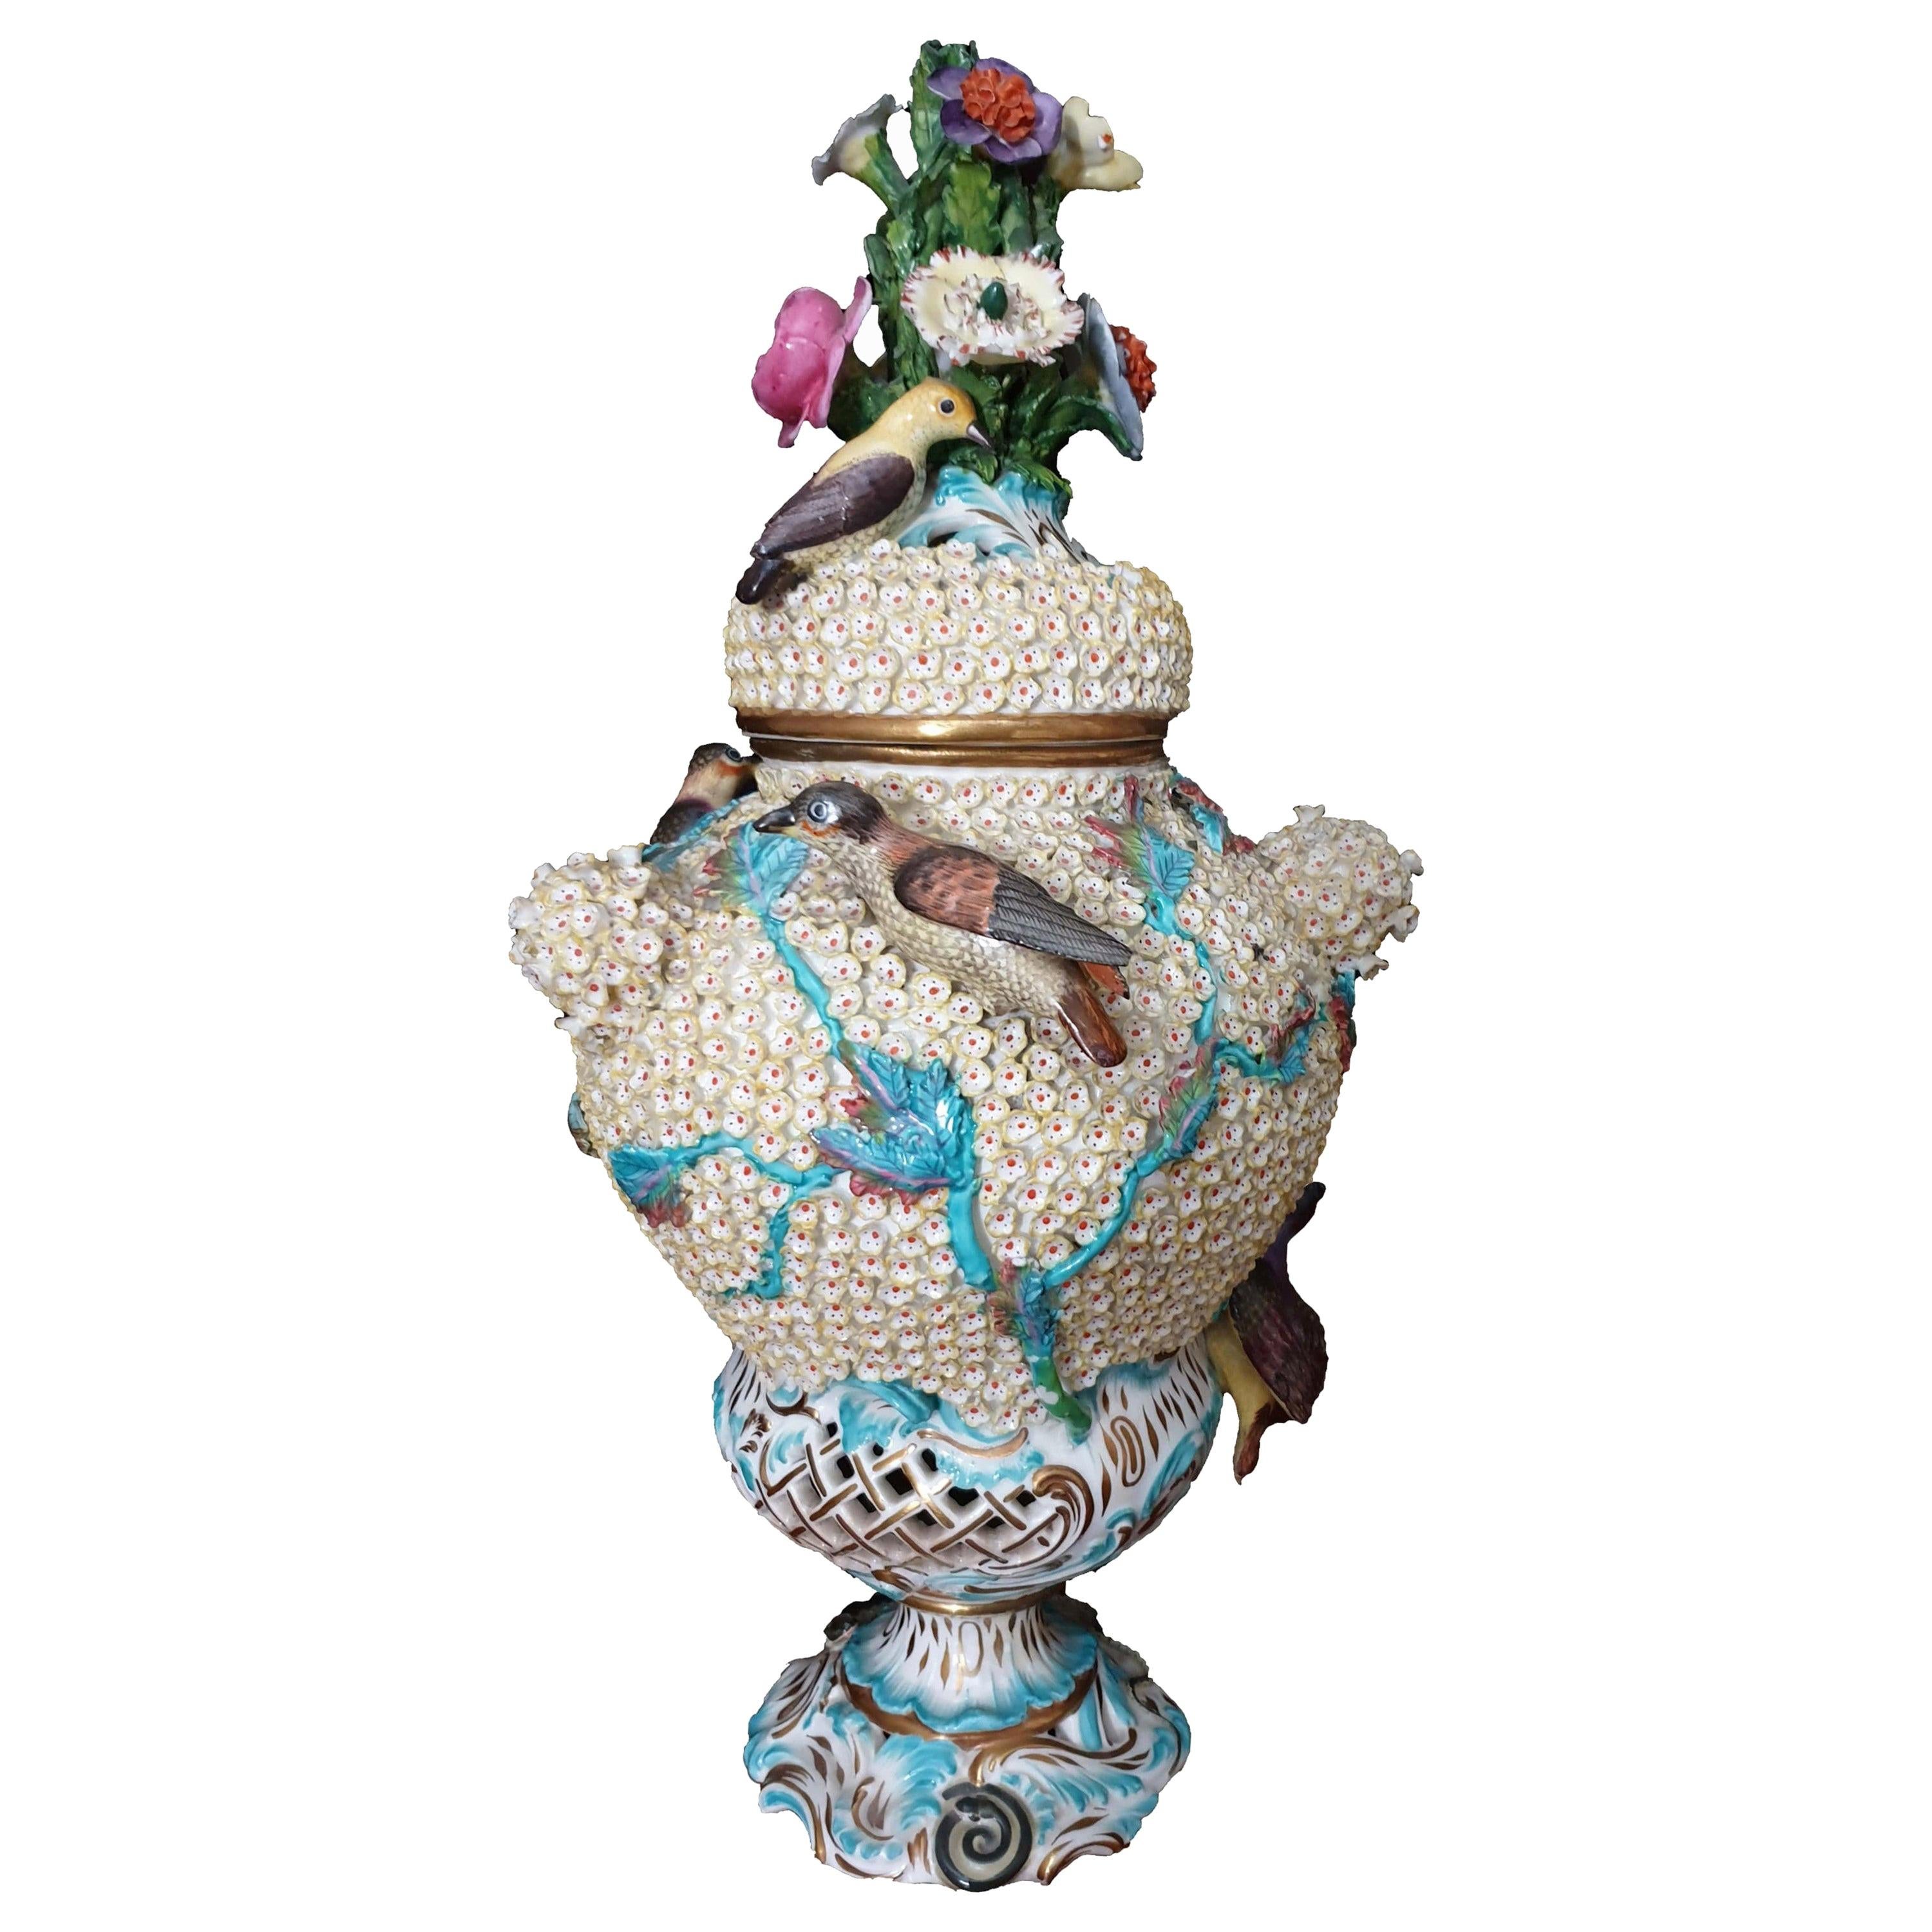 Coalport Turquoise Schneeballen Reticulated Encrusted Bird Exhibition Vase  For Sale